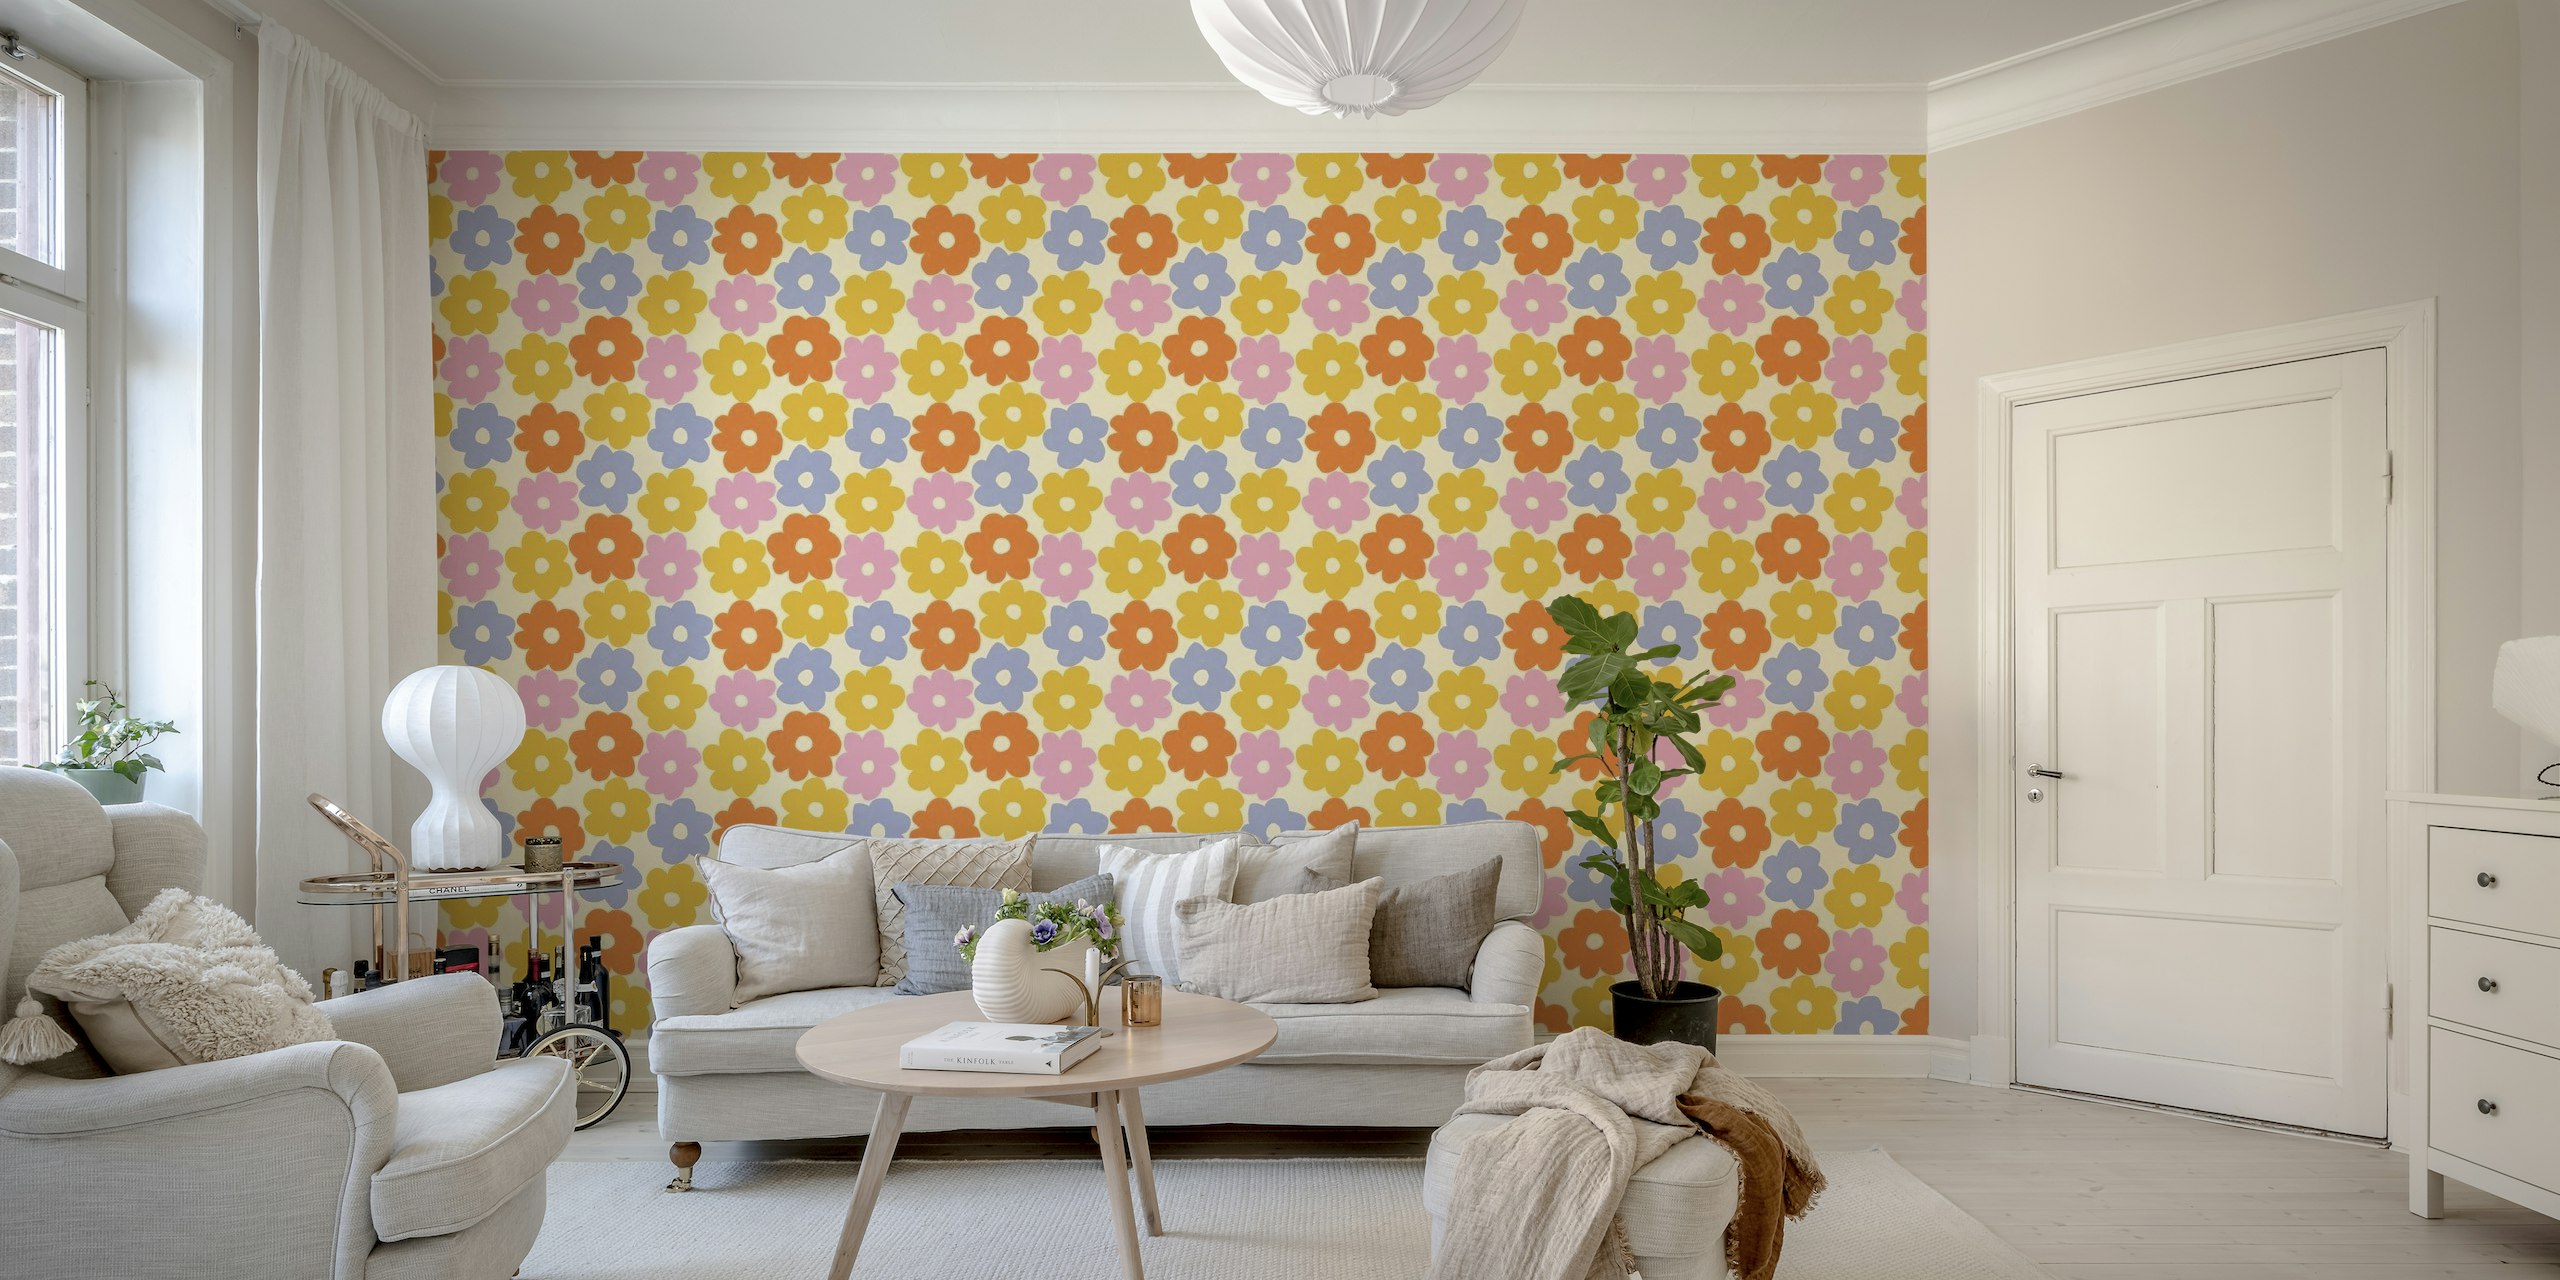 Zidna slika s jednostavnim cvjetnim uzorkom pastelnih boja s toplom neutralnom pozadinom